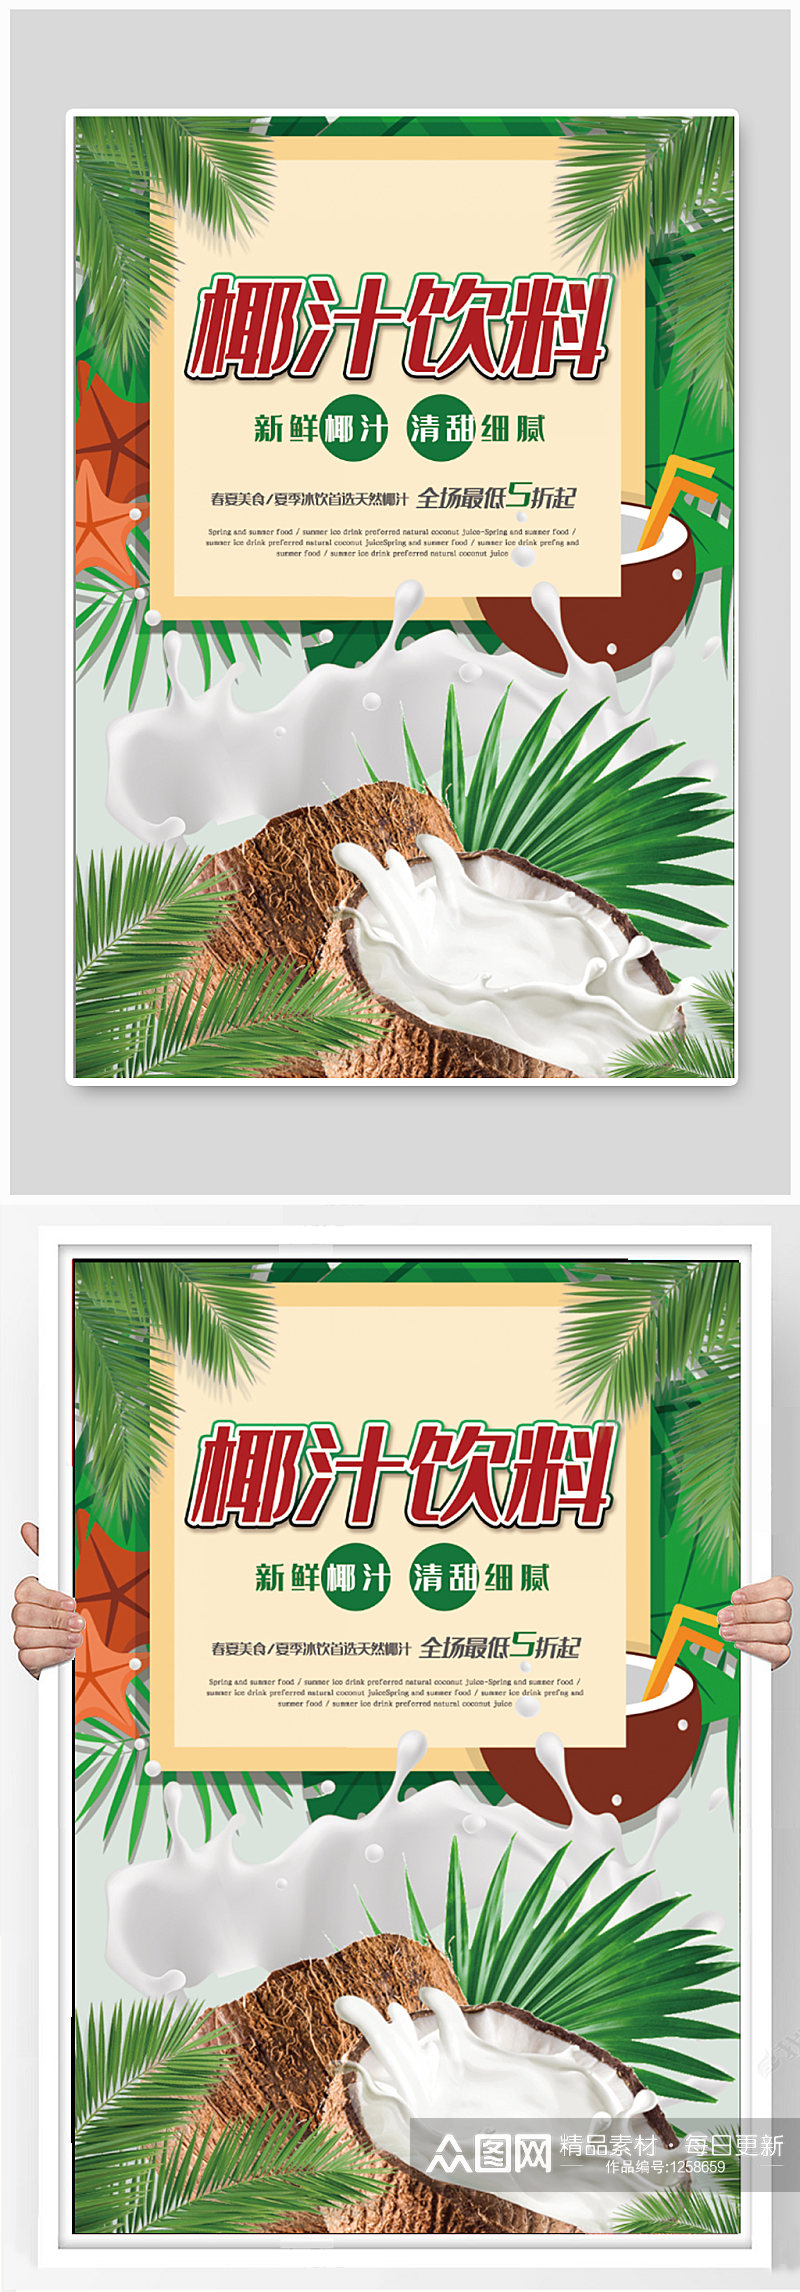 椰汁饮料饮品店宣传海报素材